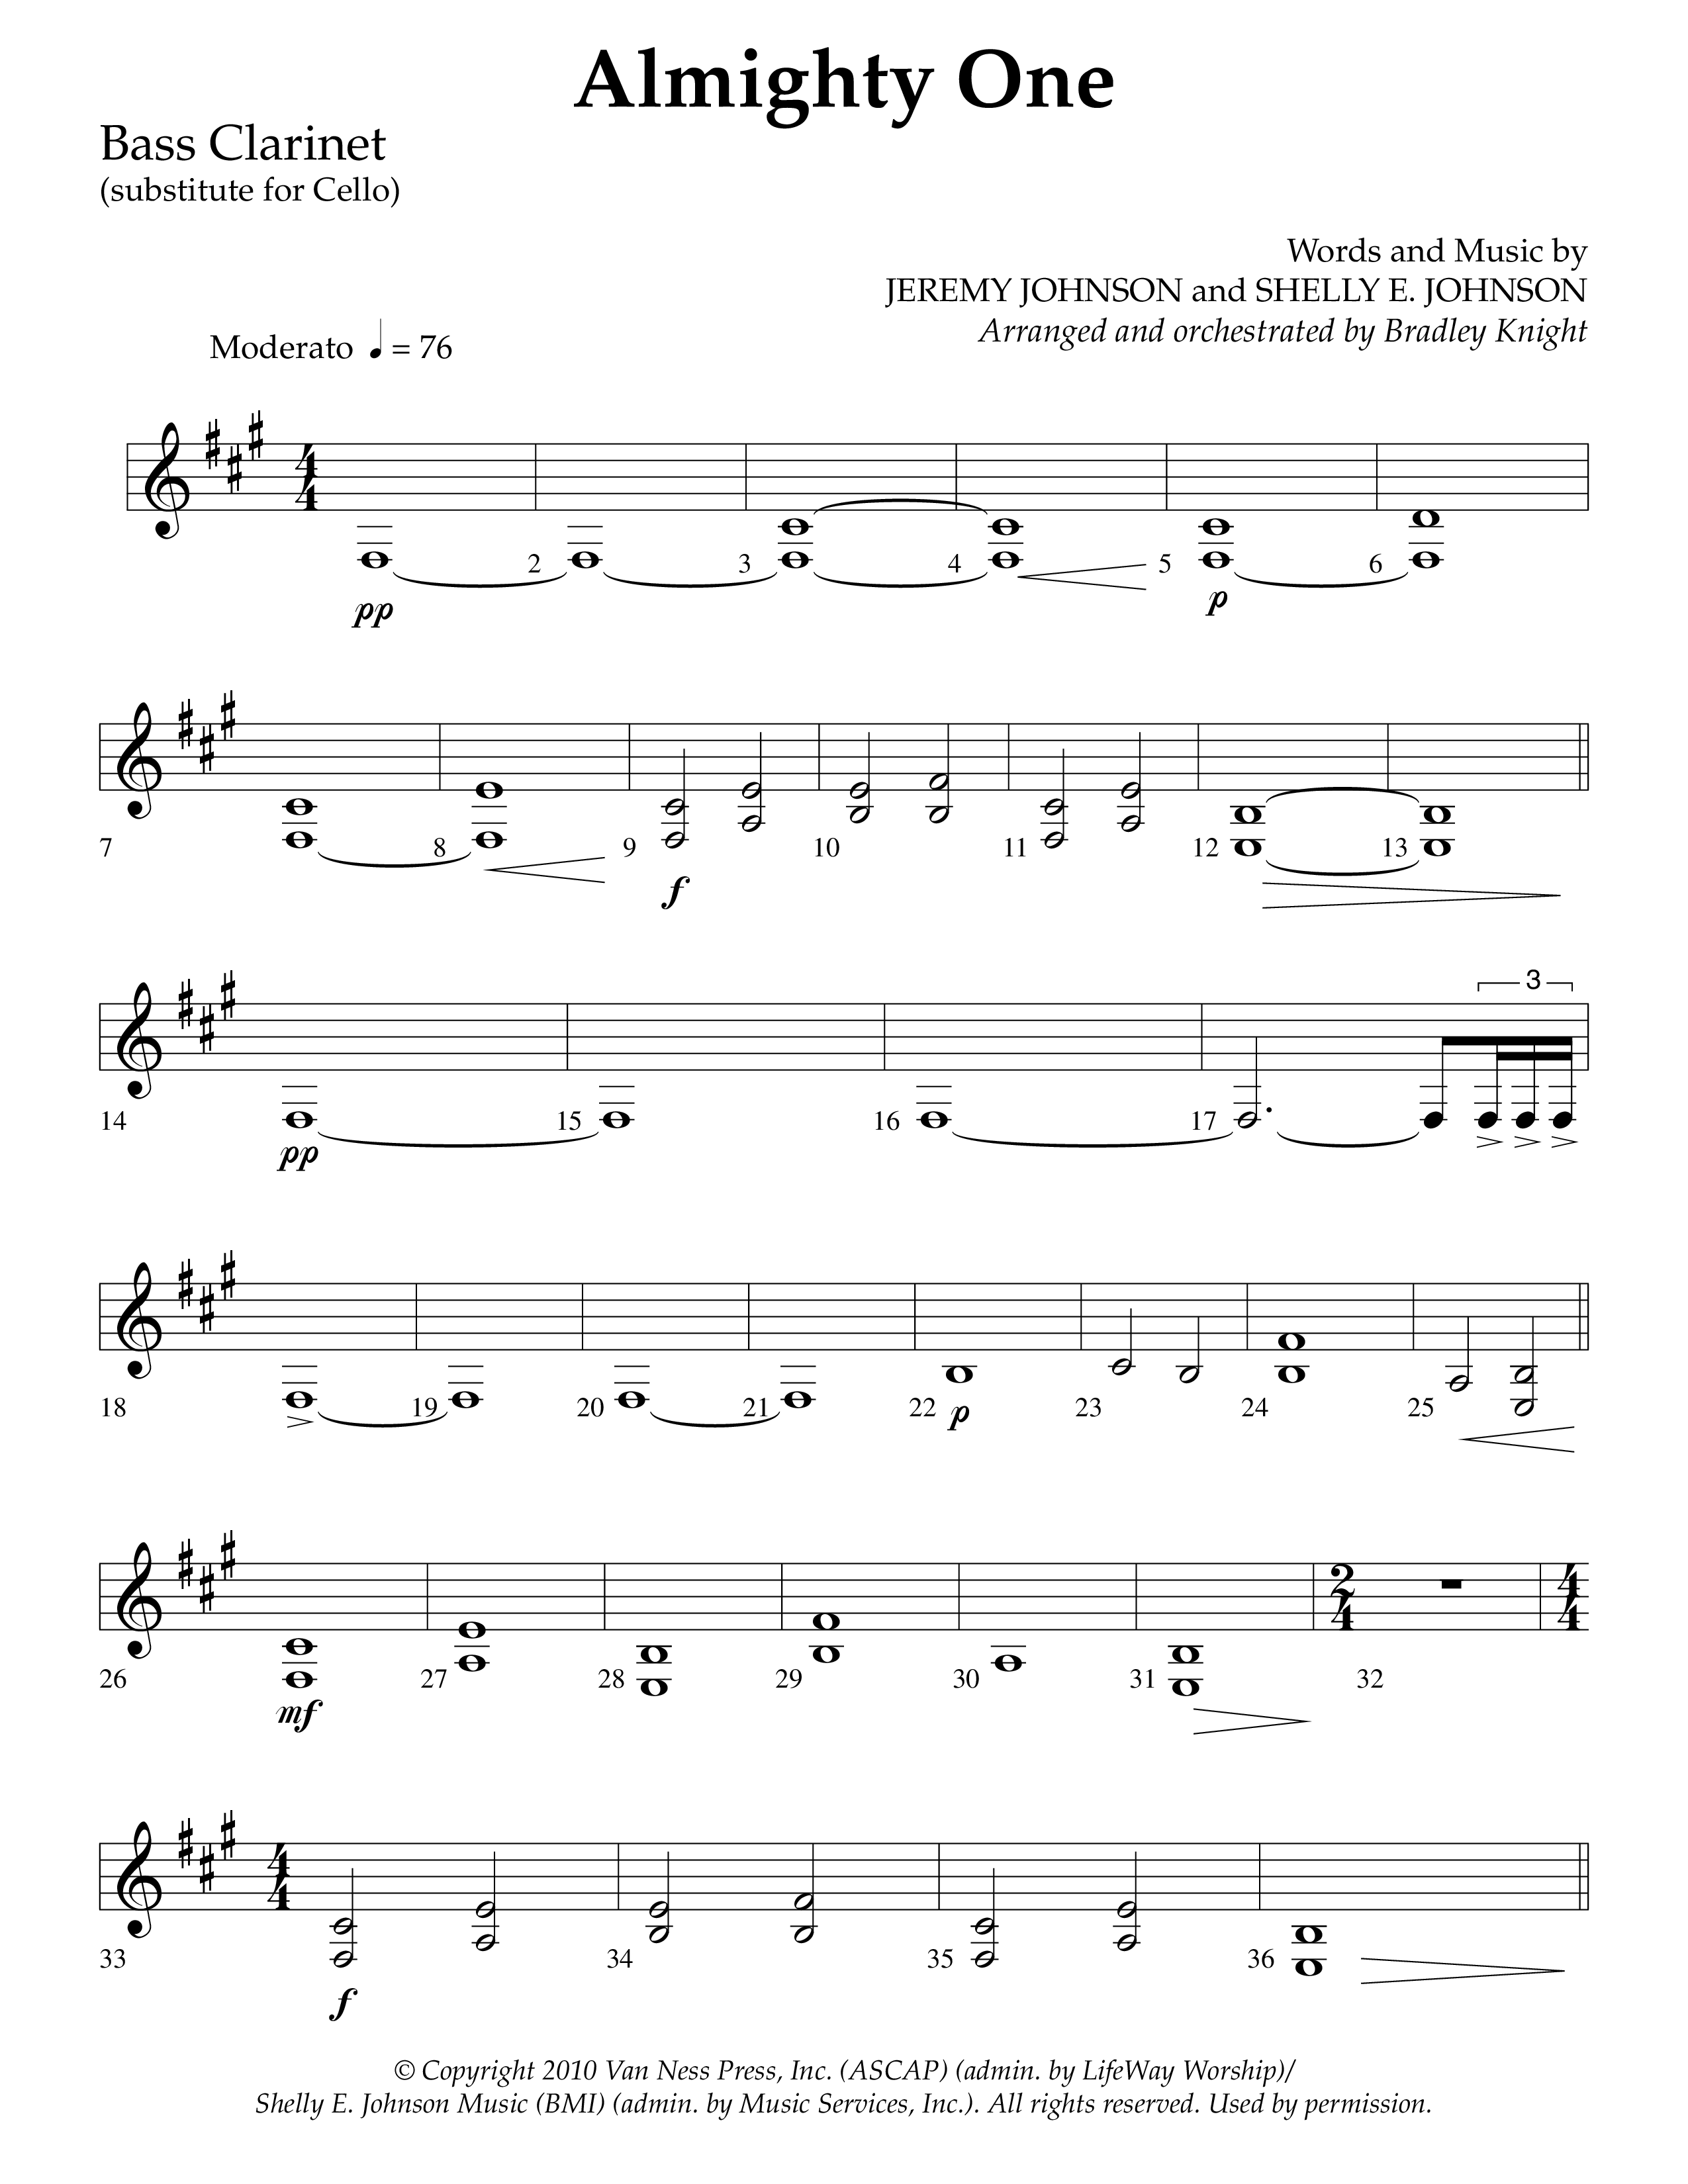 Almighty One (Choral Anthem SATB) Bass Clarinet (Lifeway Choral / Arr. Bradley Knight)